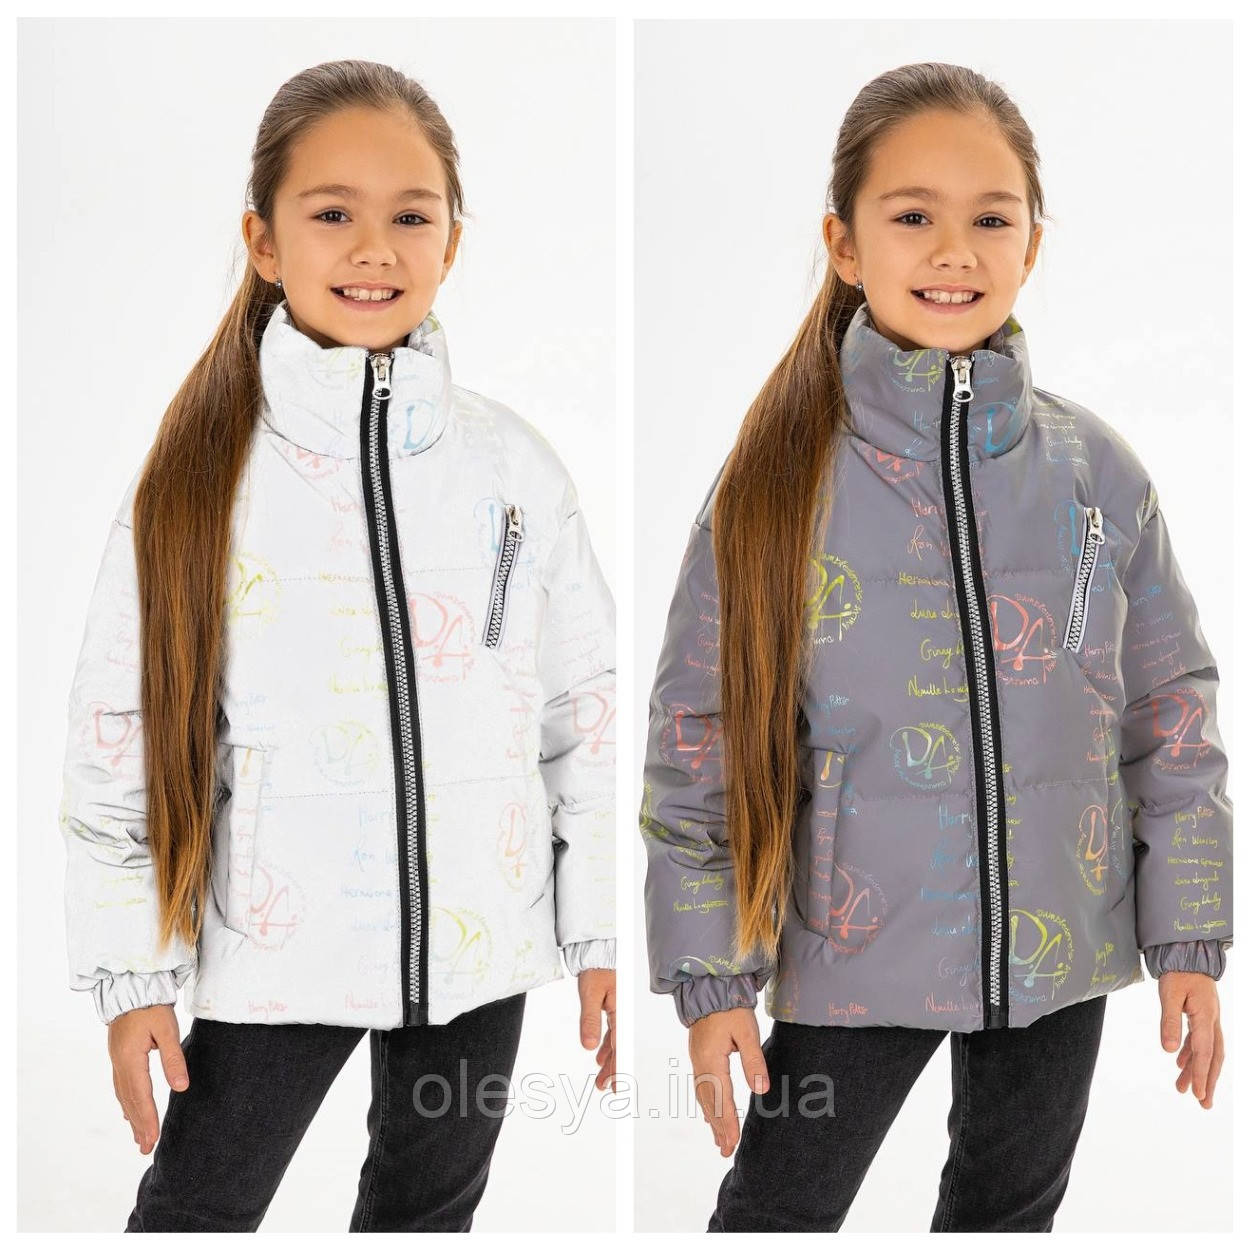 Модна світловідбиваюча куртка для дівчаток Герміона тм MyChance Розміри 134 - 164